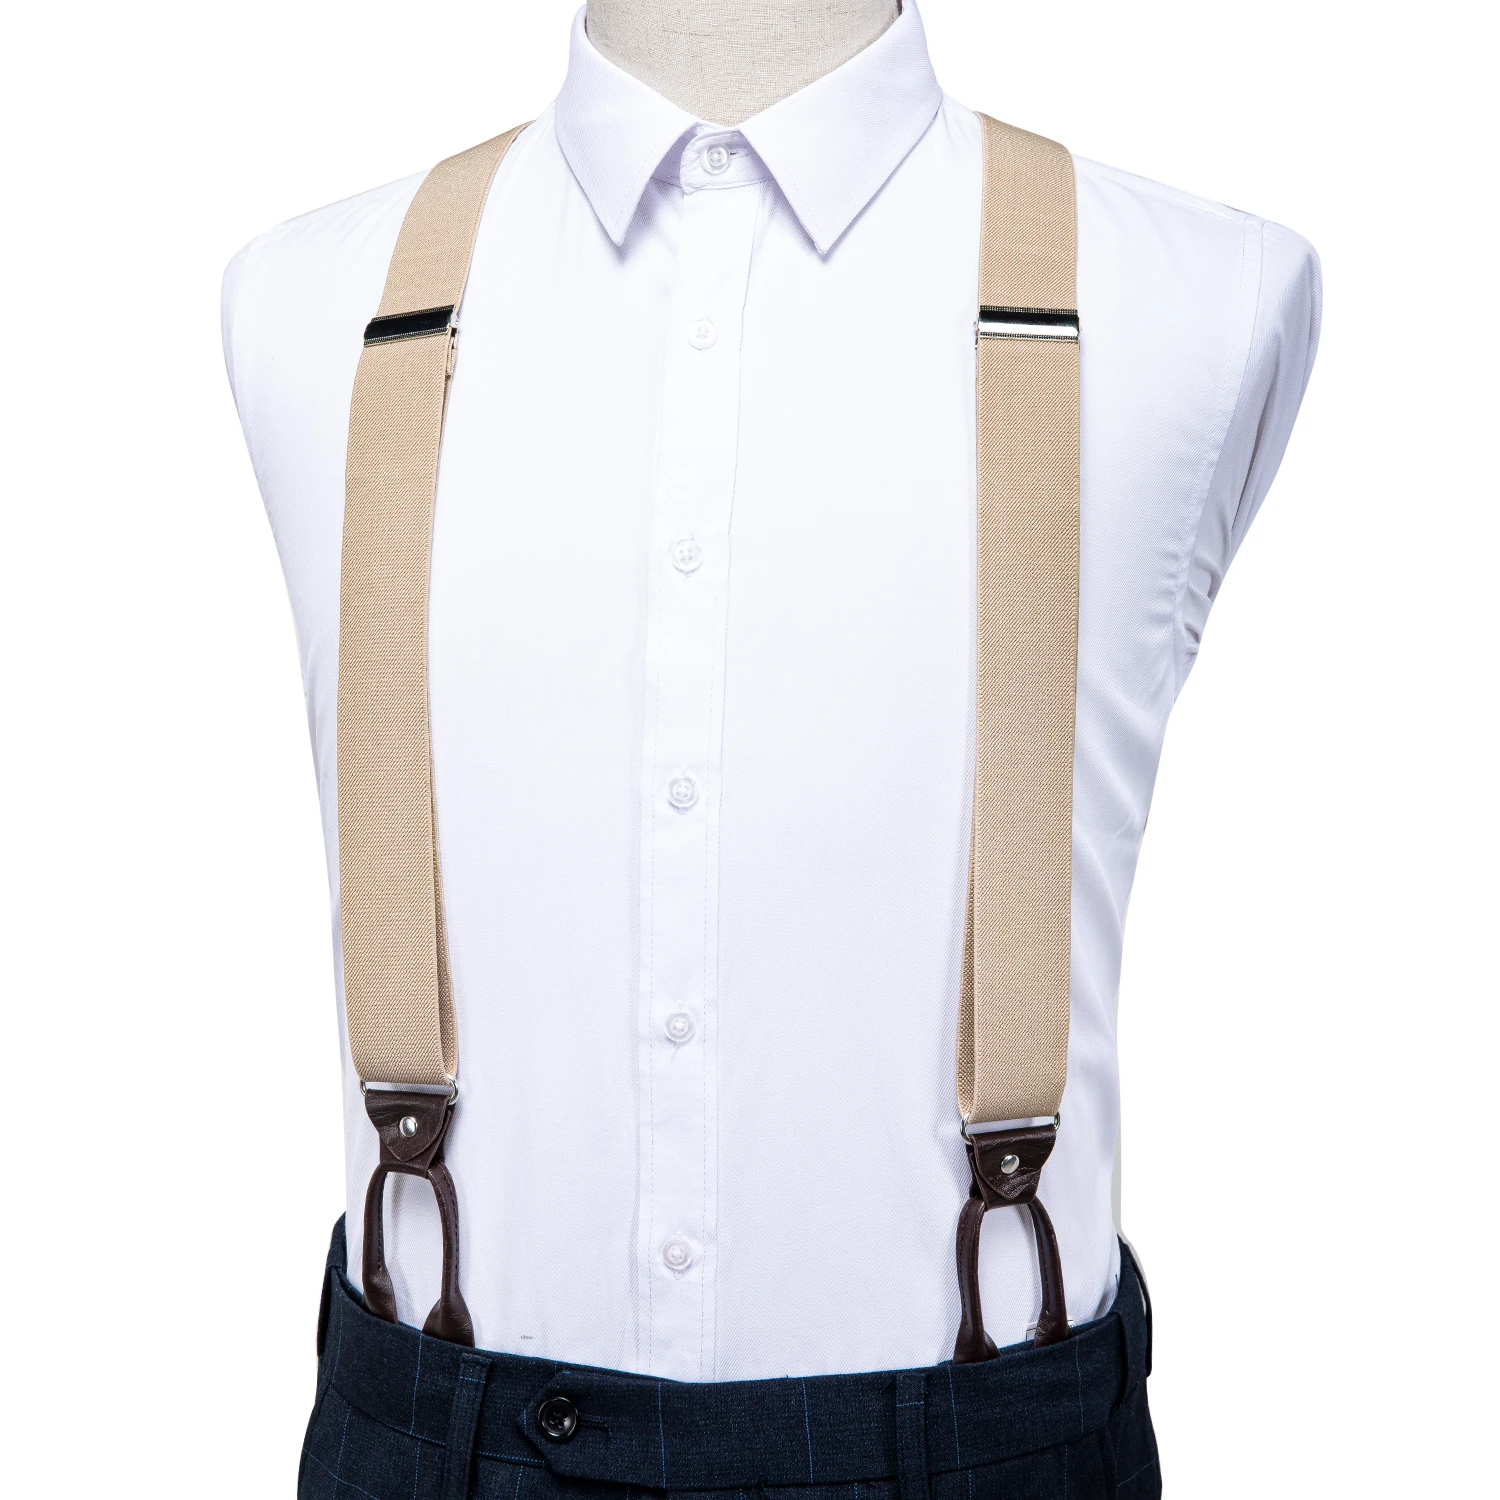 New Mens Suspenders 6 Button Hole Leather Elastic Suspenders Braces Belt 4 Color 